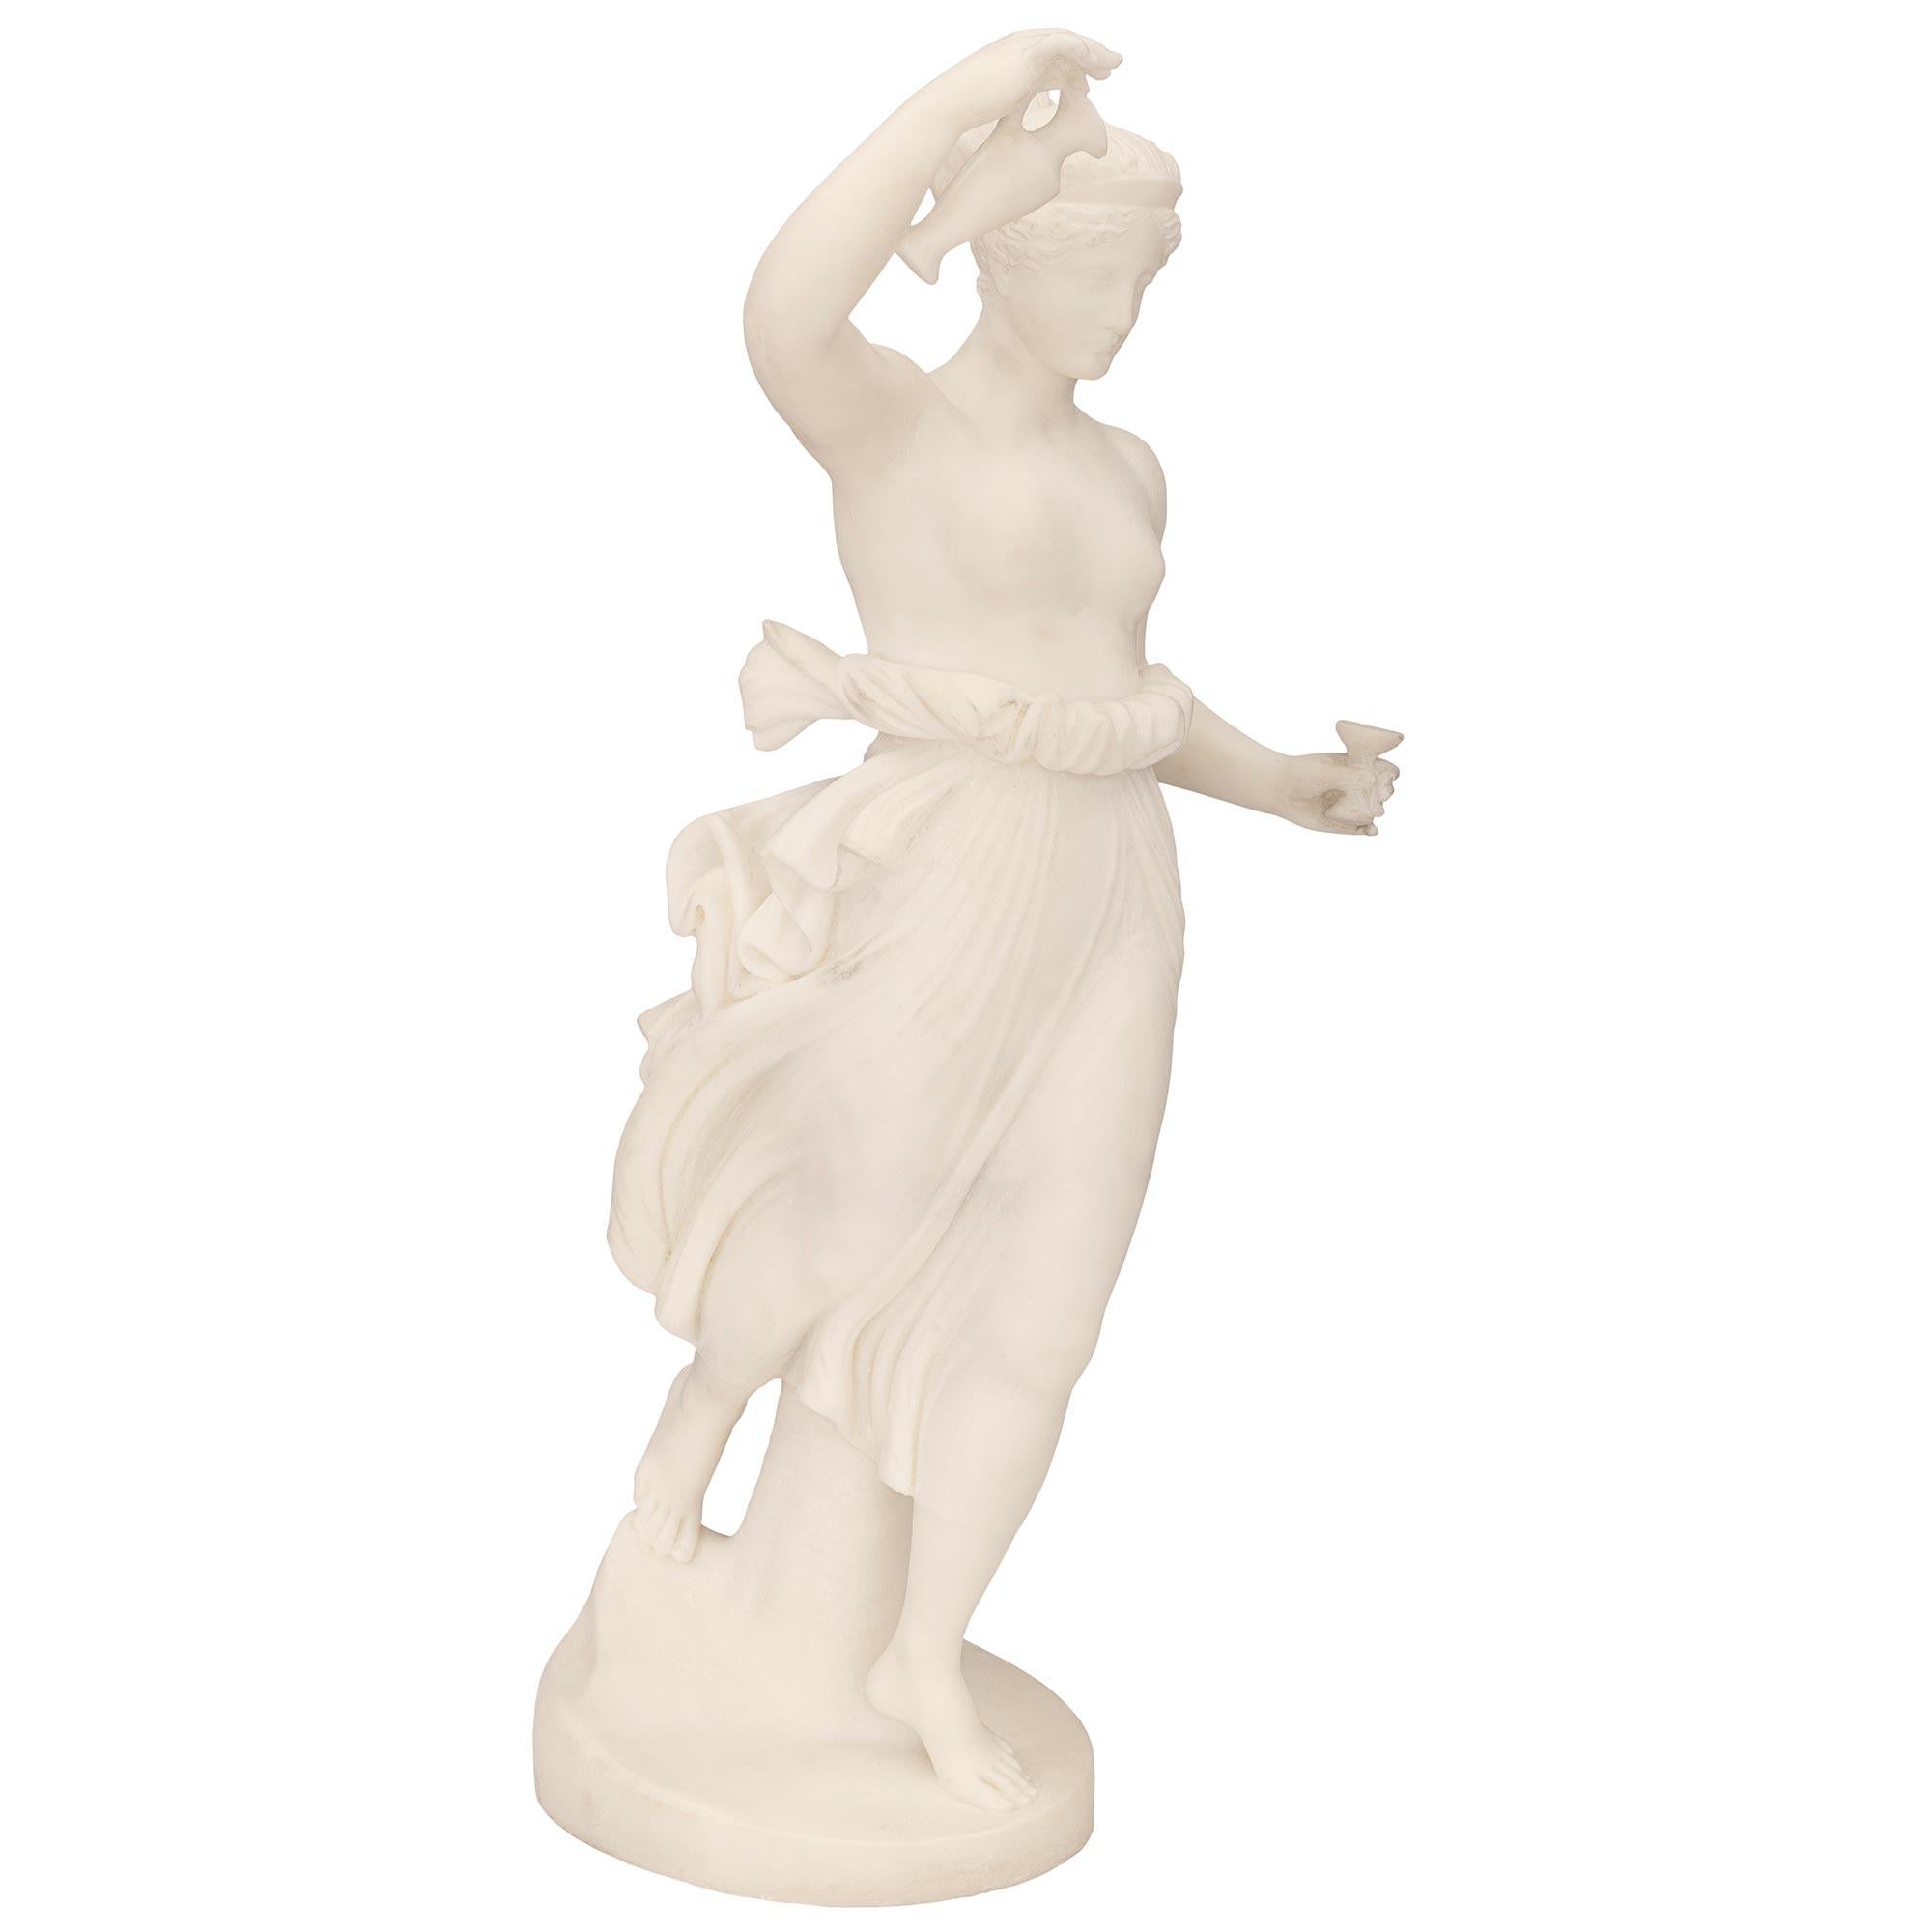 Magnifique statue d'Hébé en marbre blanc de Carrare, datant du XIXe siècle, de grande qualité. La statue est surélevée par un socle circulaire où la belle Hébé se tient debout, pieds nus, devant un tronc d'arbre. Elle est coiffée en chignon et